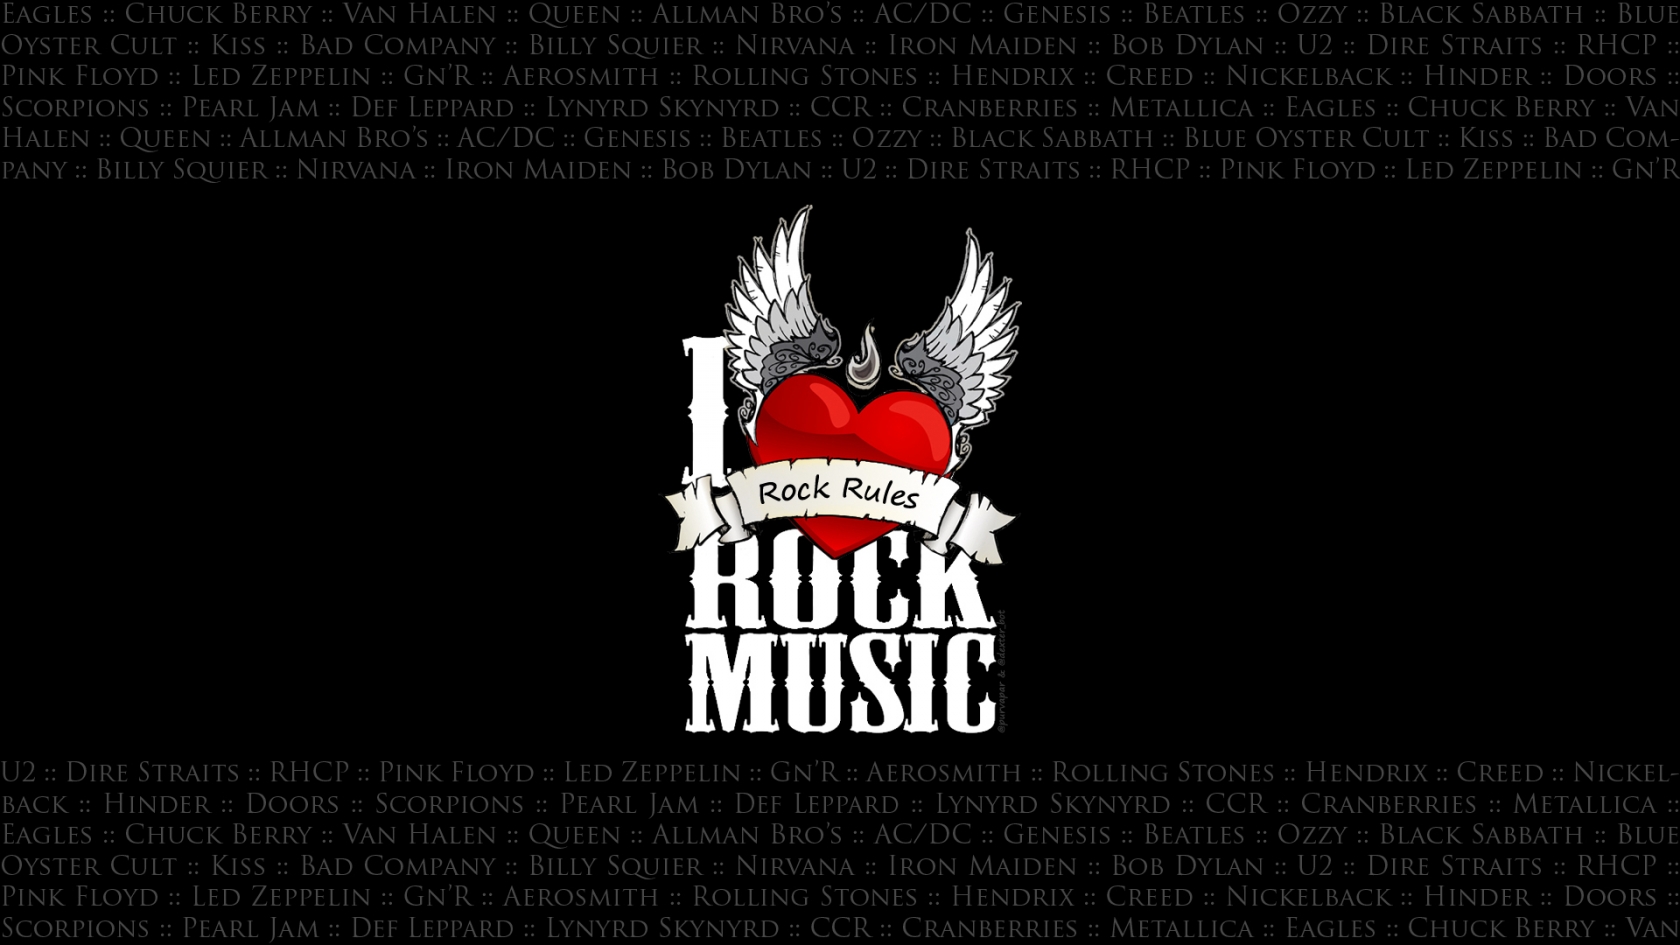 I Love Rock Music for 1680 x 945 HDTV resolution